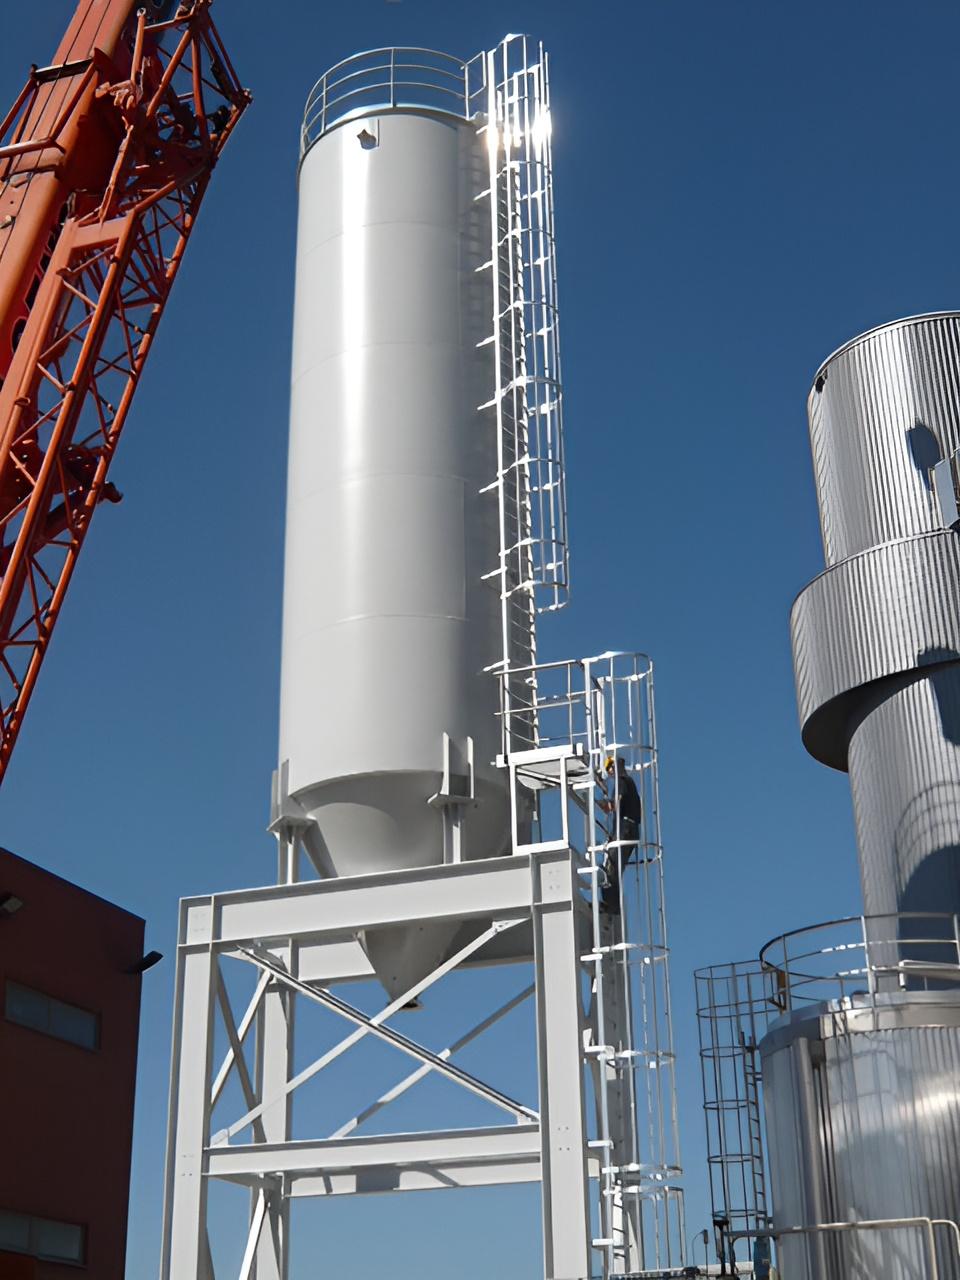 Ontwerp, productie en installatie van een silo voor vliegassen inclusief de steunstructuur, ladders en platforms.